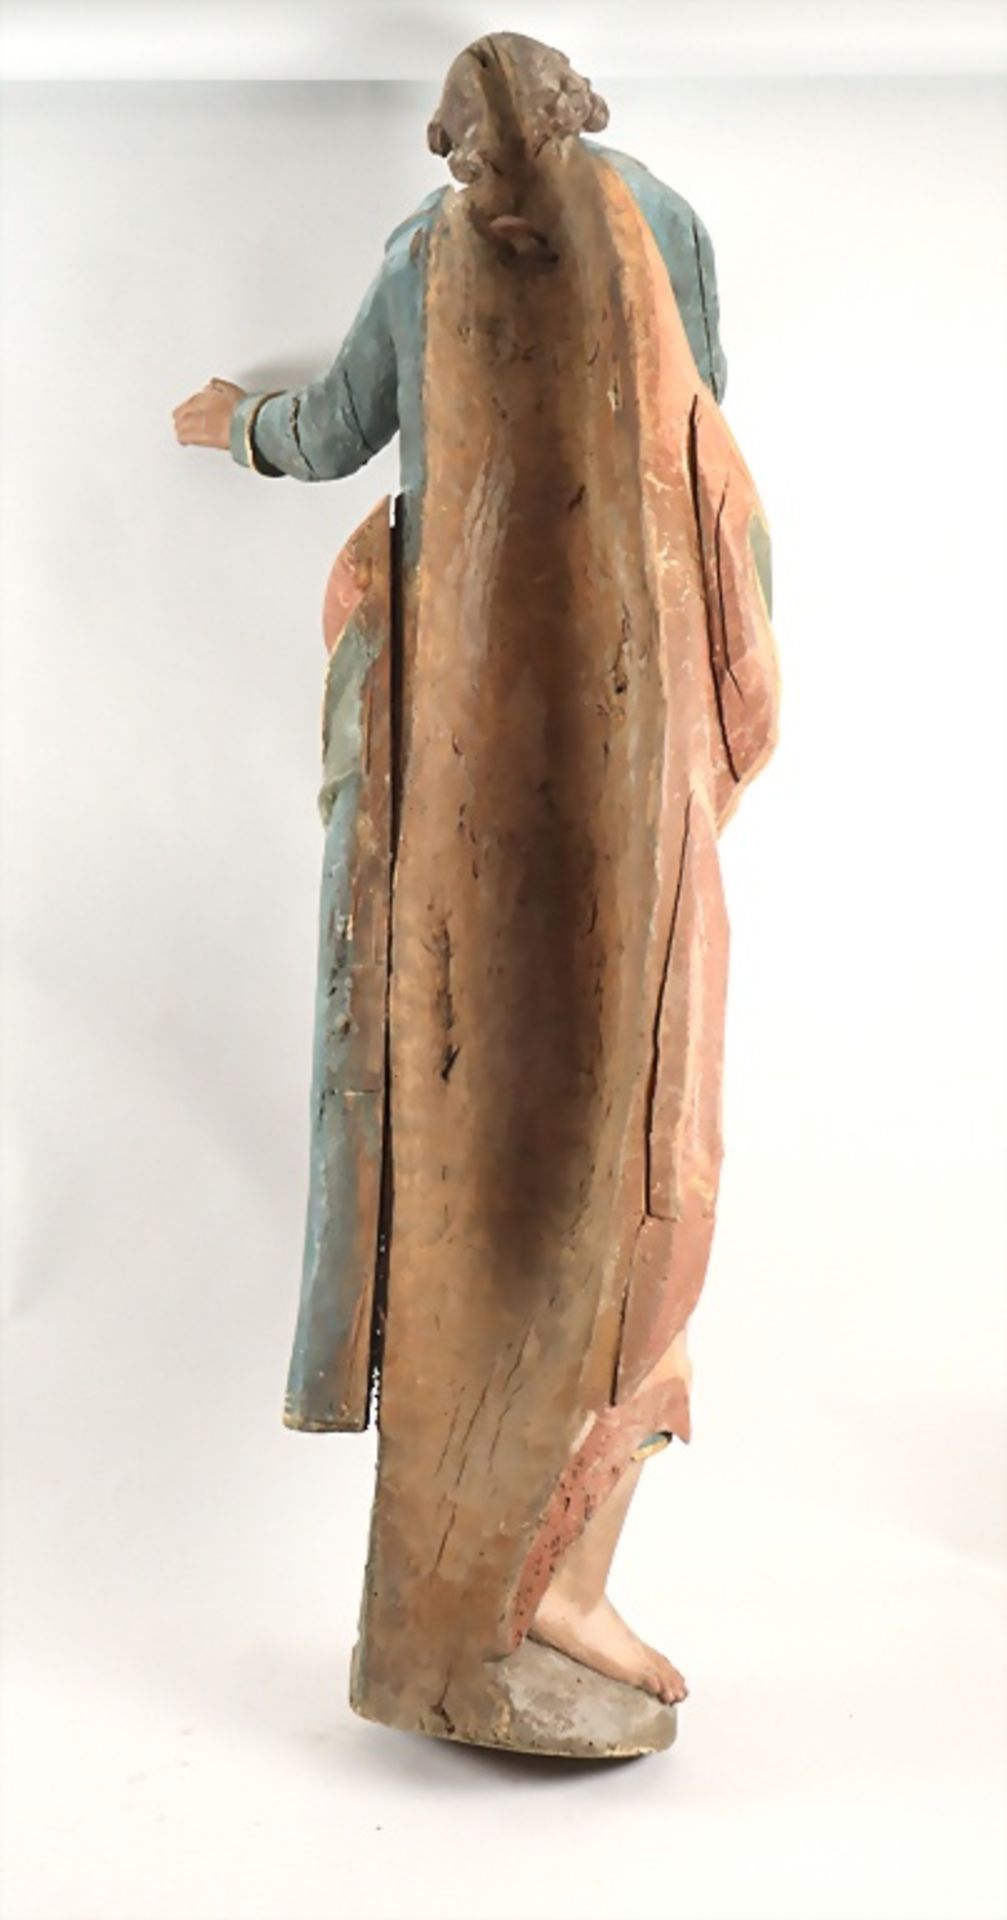 Heiligenfigur / A wooden sculpture of a saint, Anfang 18. Jh. - Bild 7 aus 7